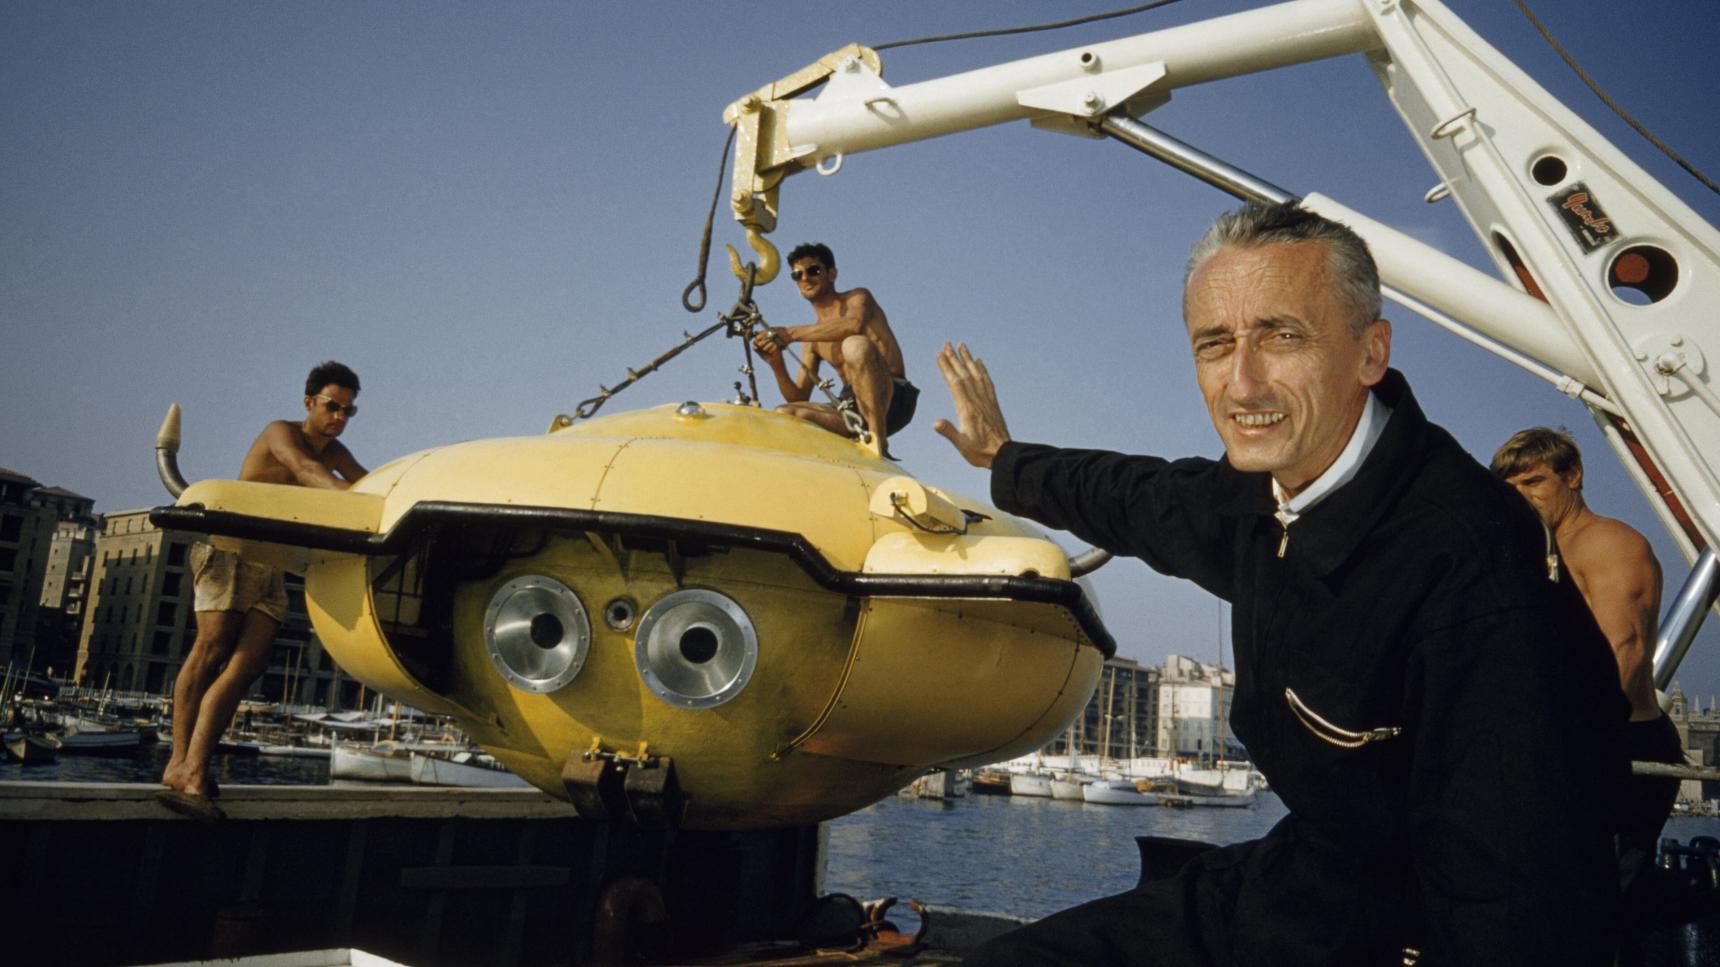 sinopsis Cousteau: Pasado y futuro